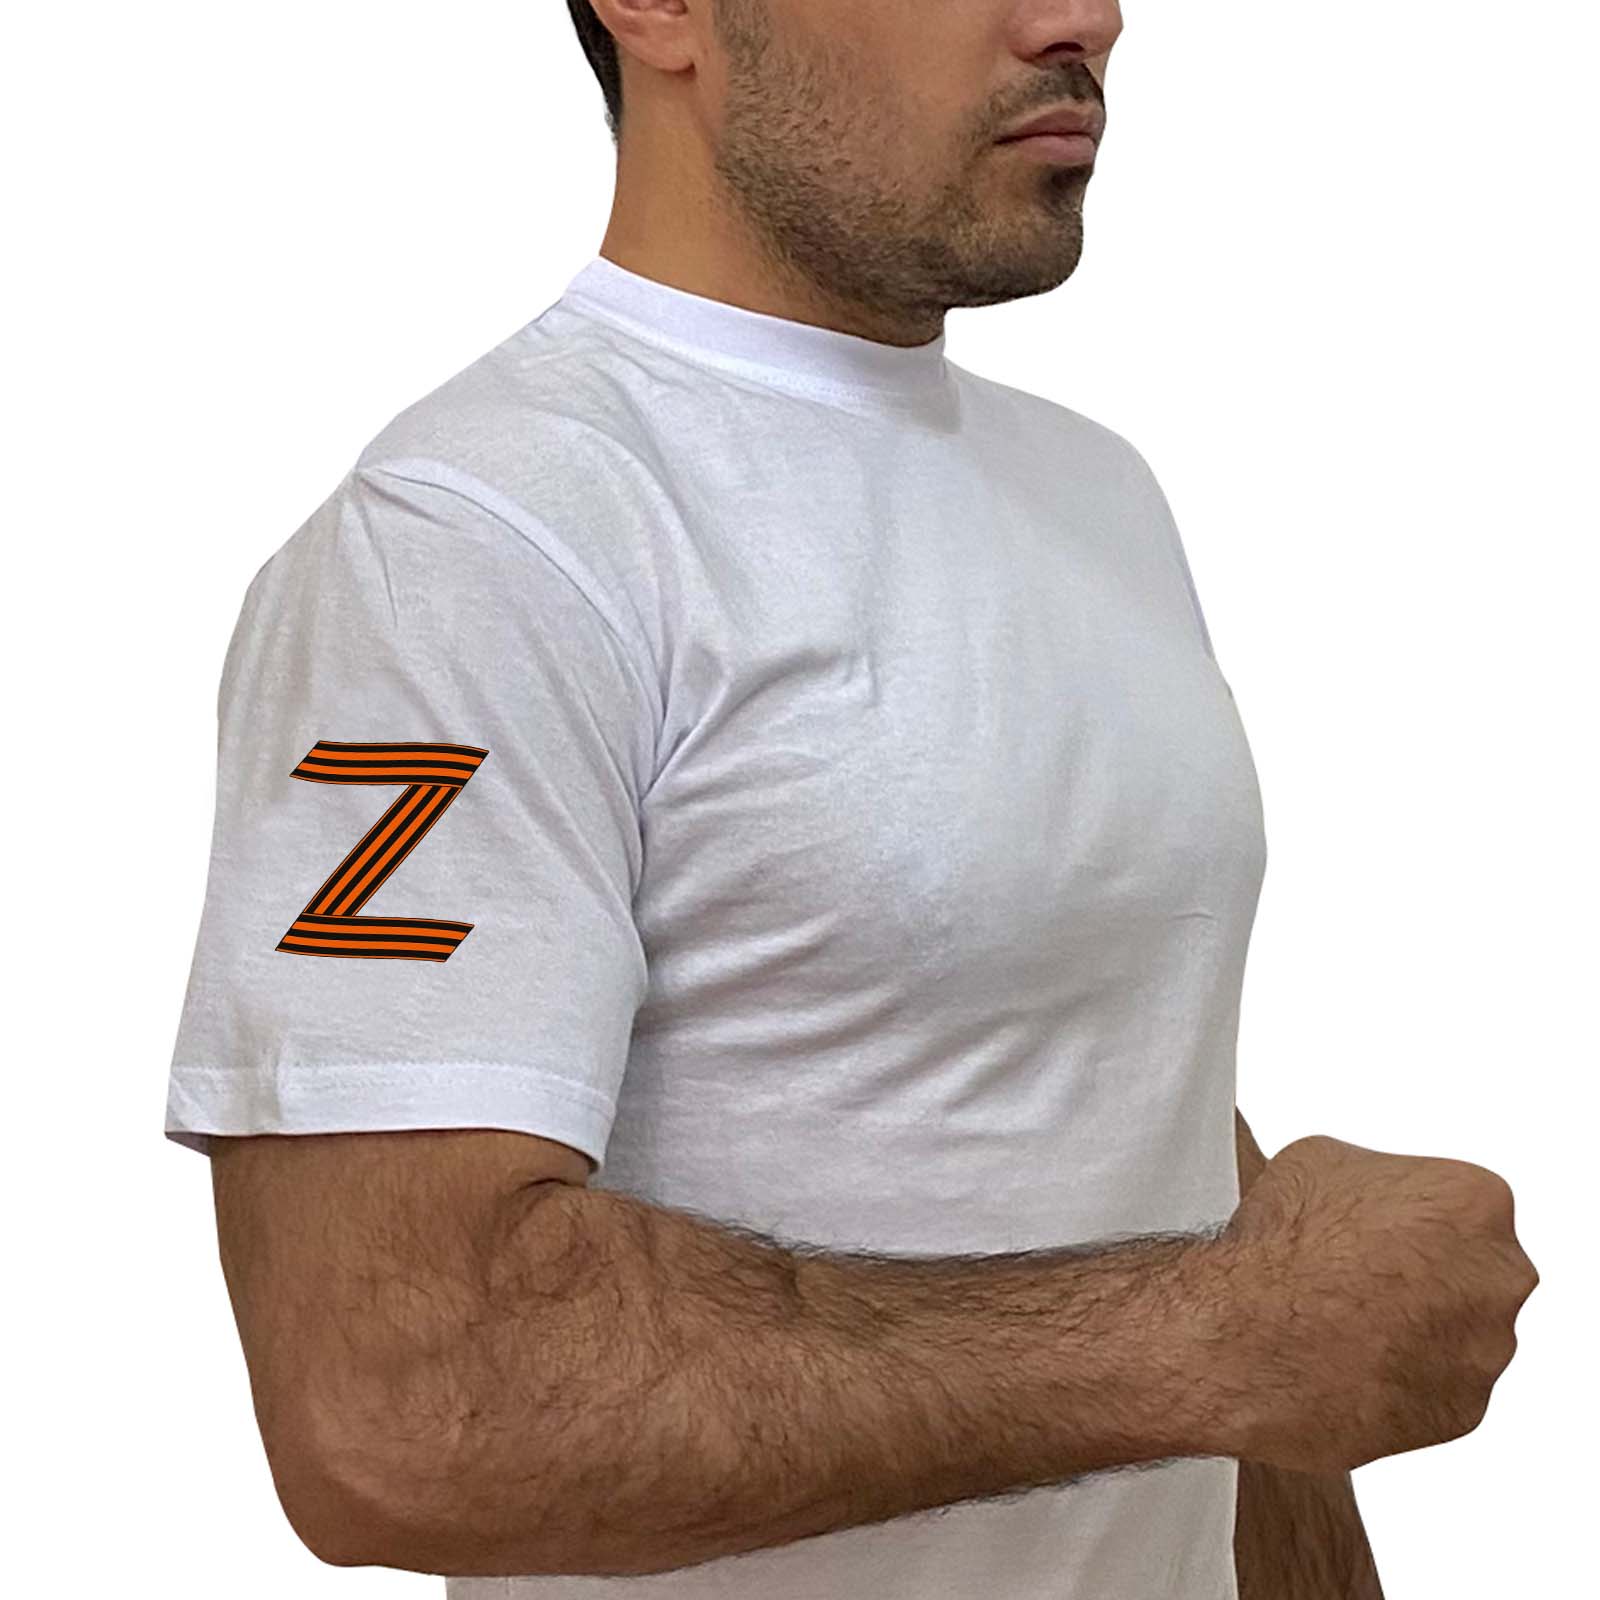 Купить белую футболку с георгиевским Z на рукаве